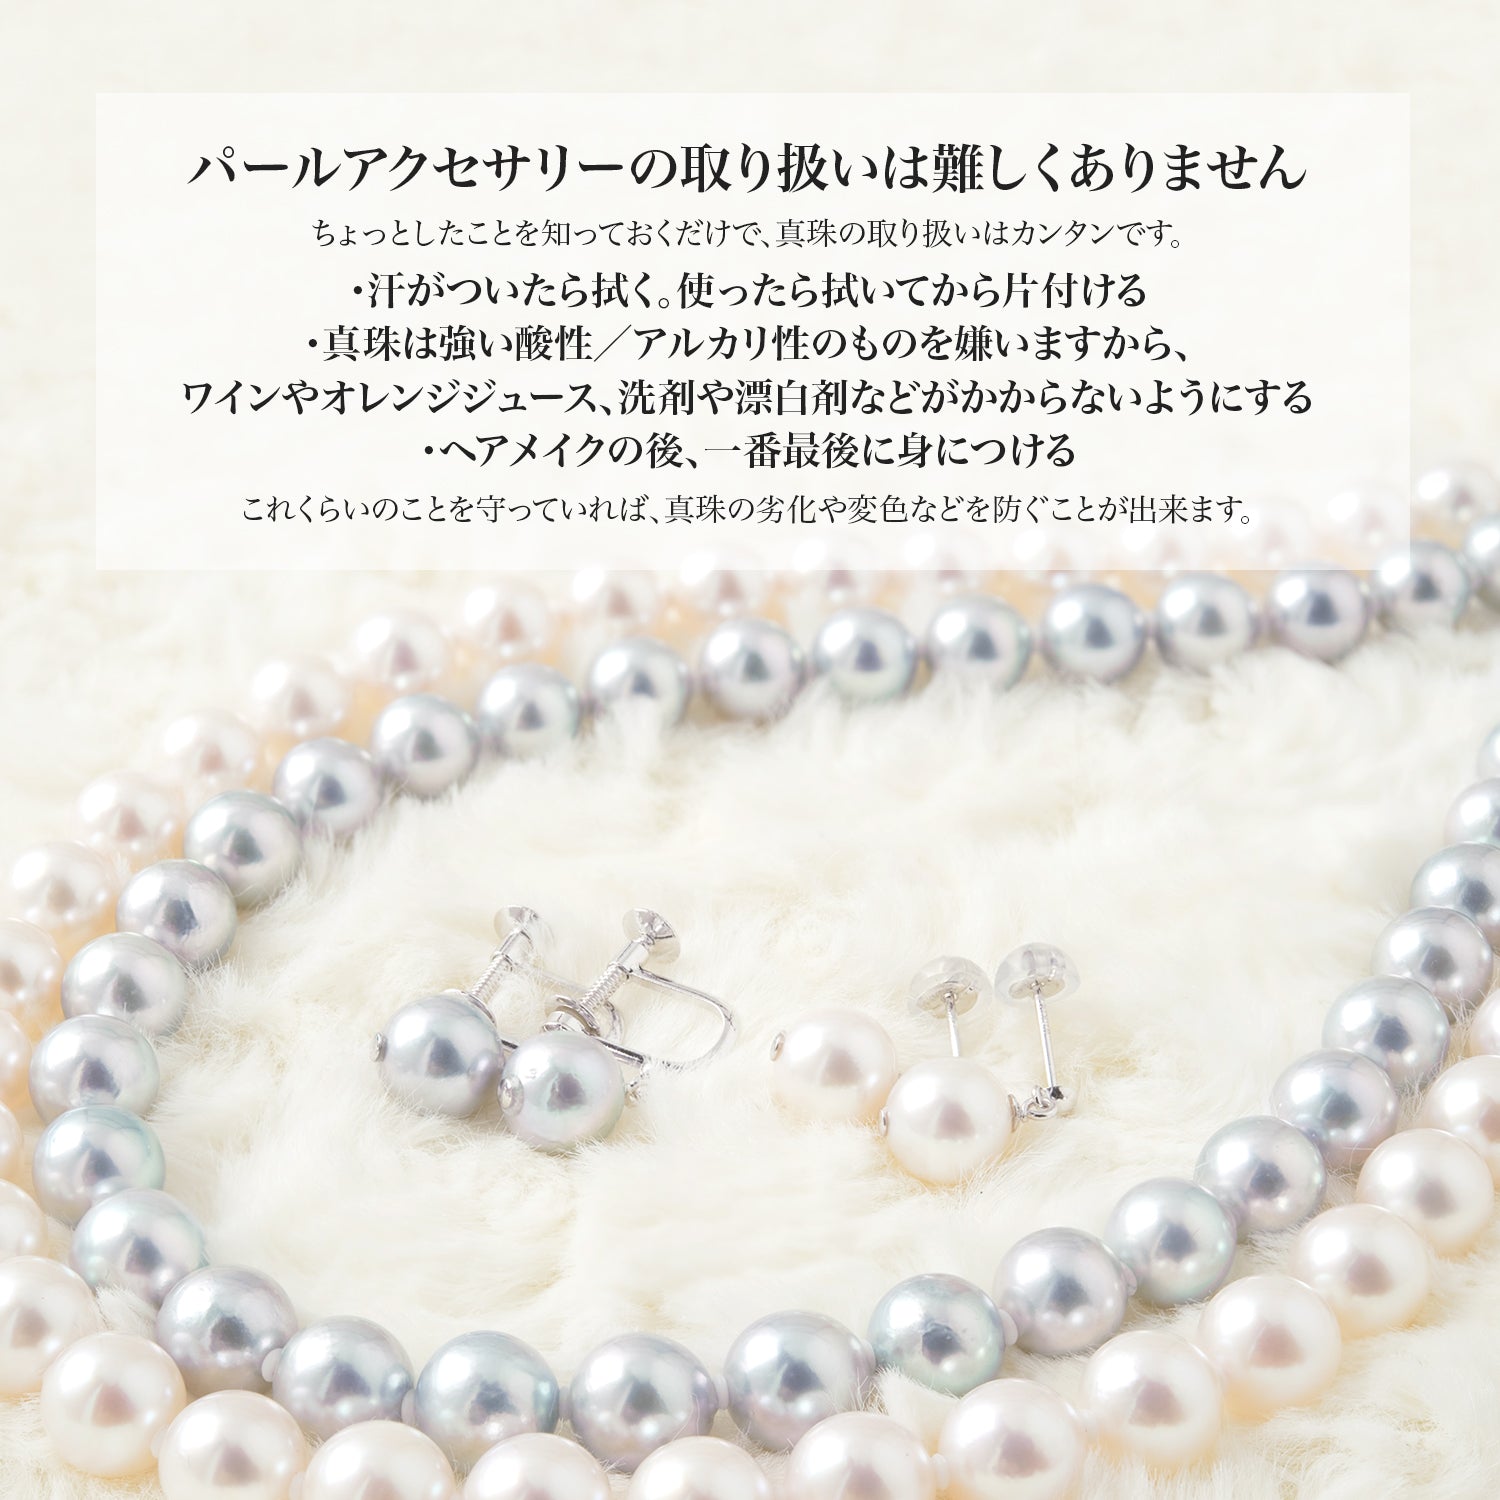 Akoya 珍珠 3 颗珍珠通项链 [6.0-8.5mm] 黄铜铑珍珠项链 2 种可供选择